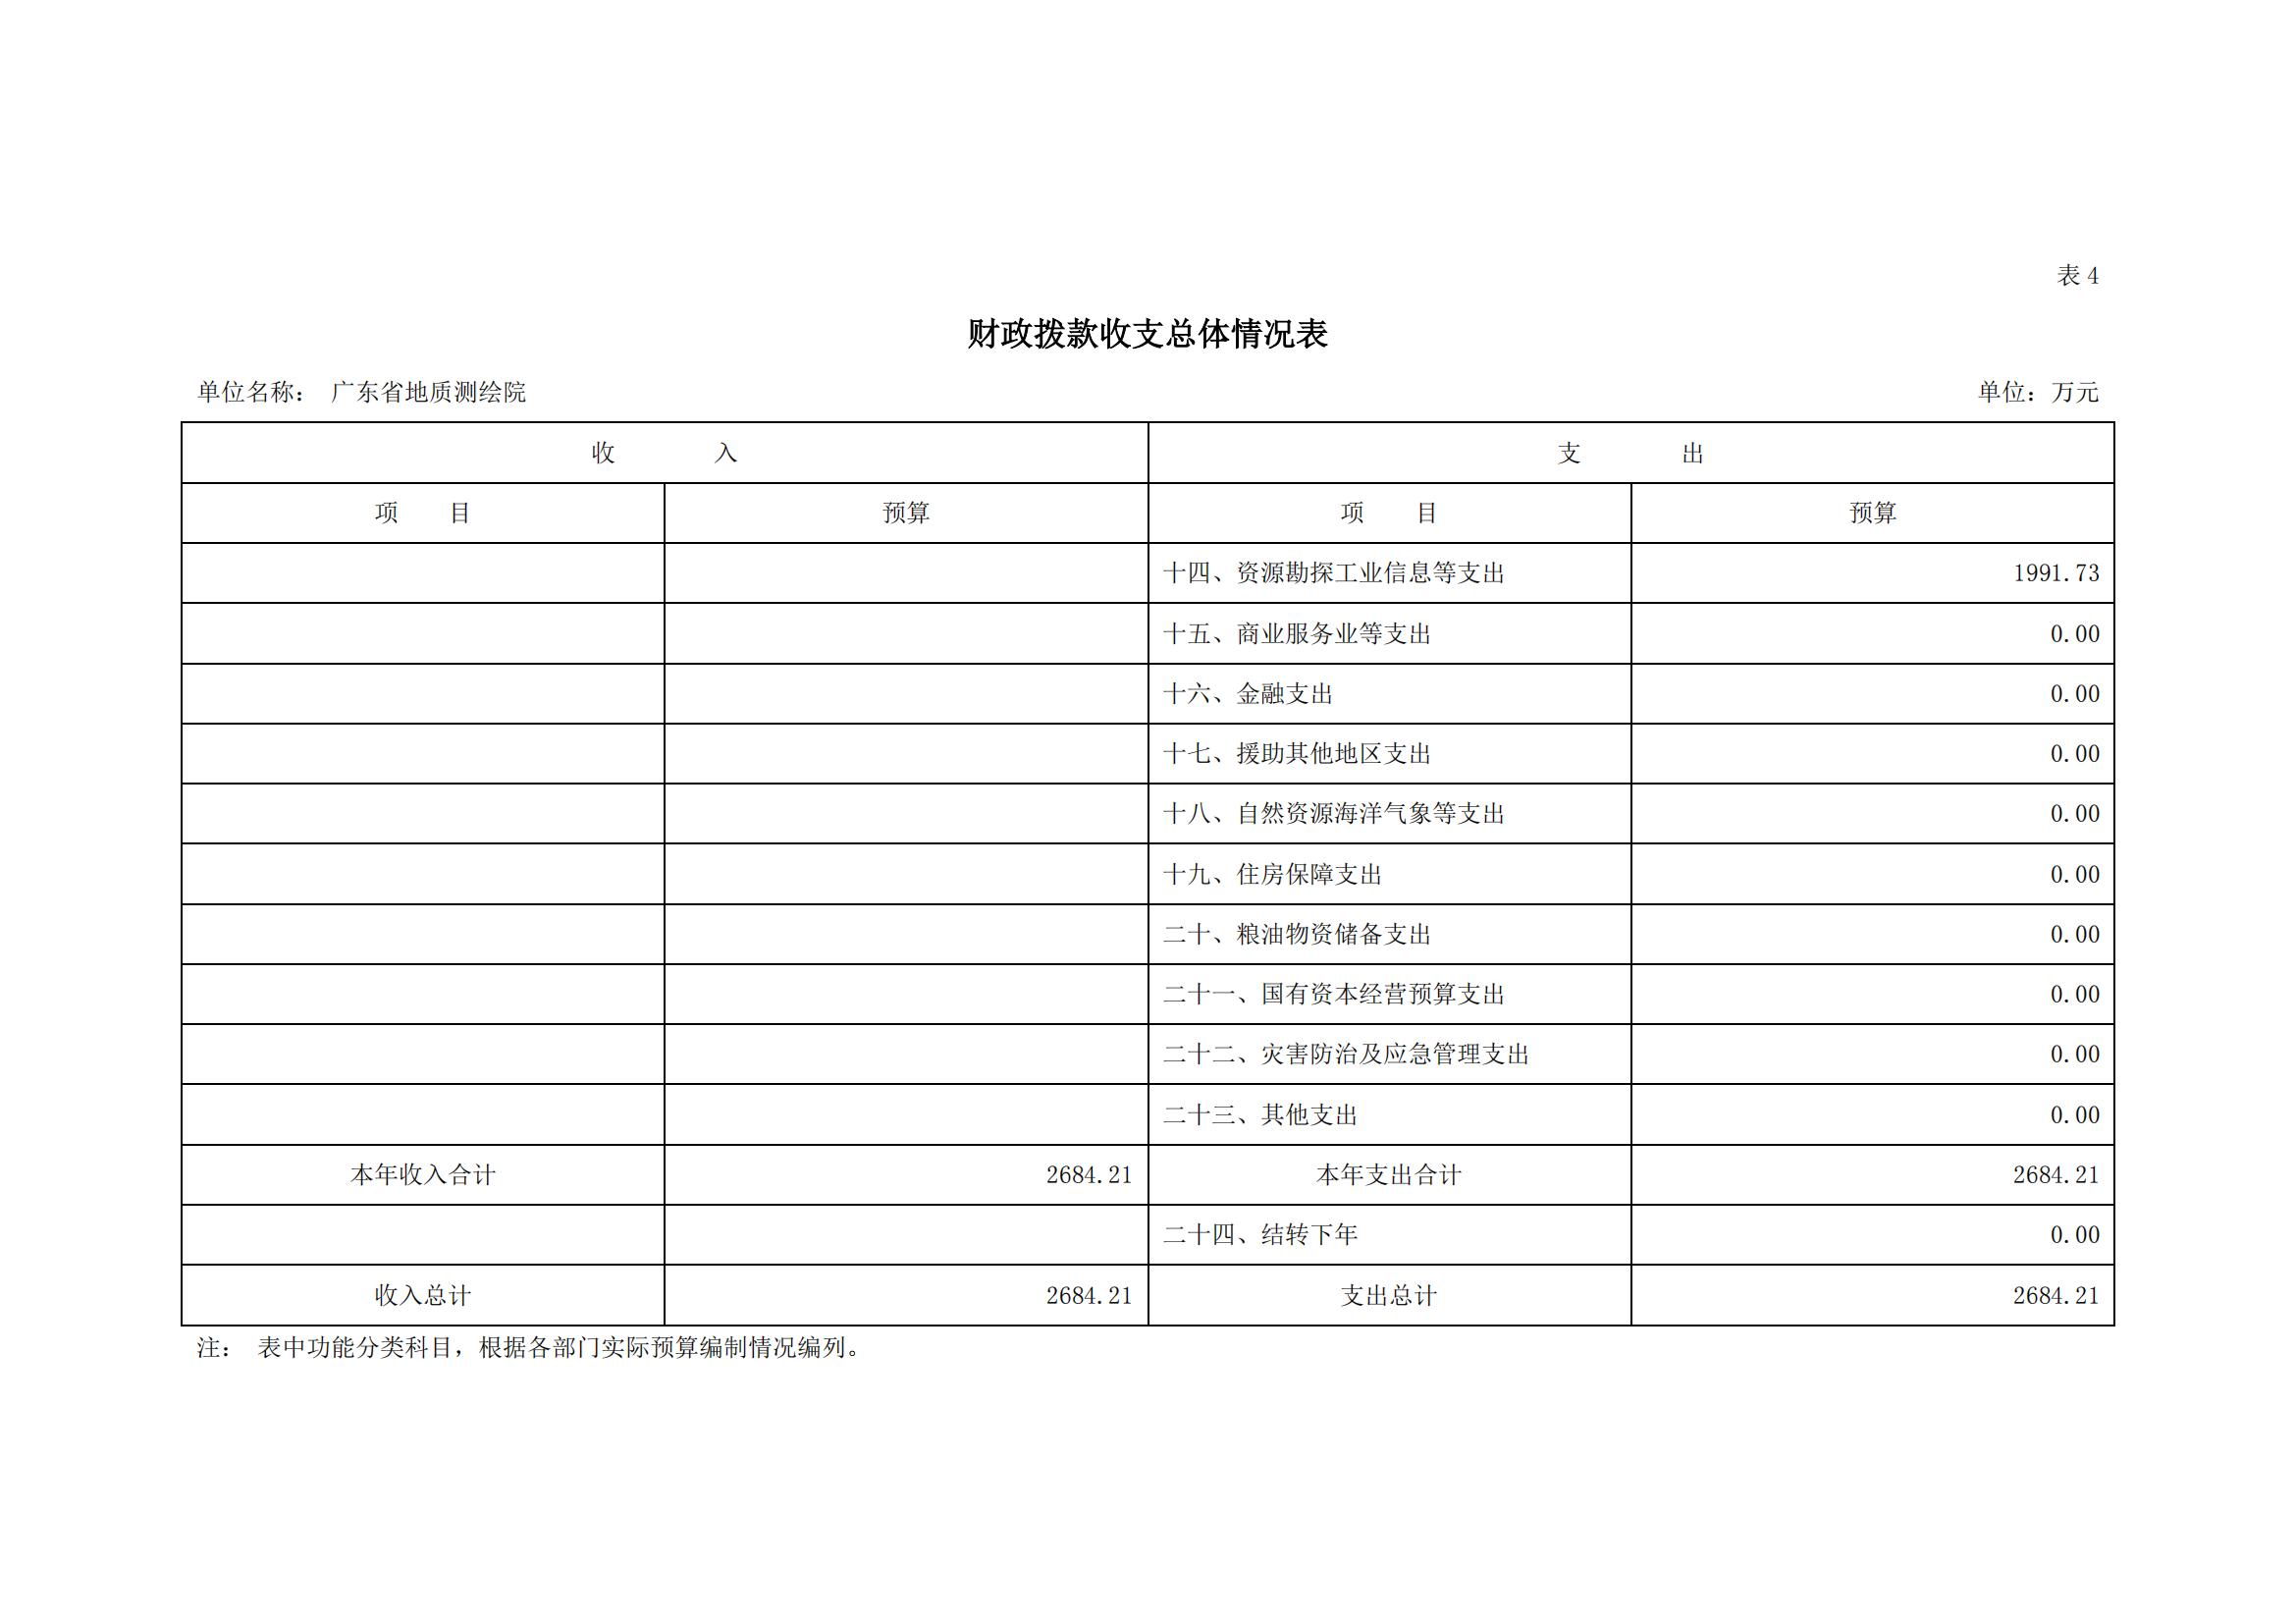 2021年广东省地质测绘院部门预算公开_09.jpg